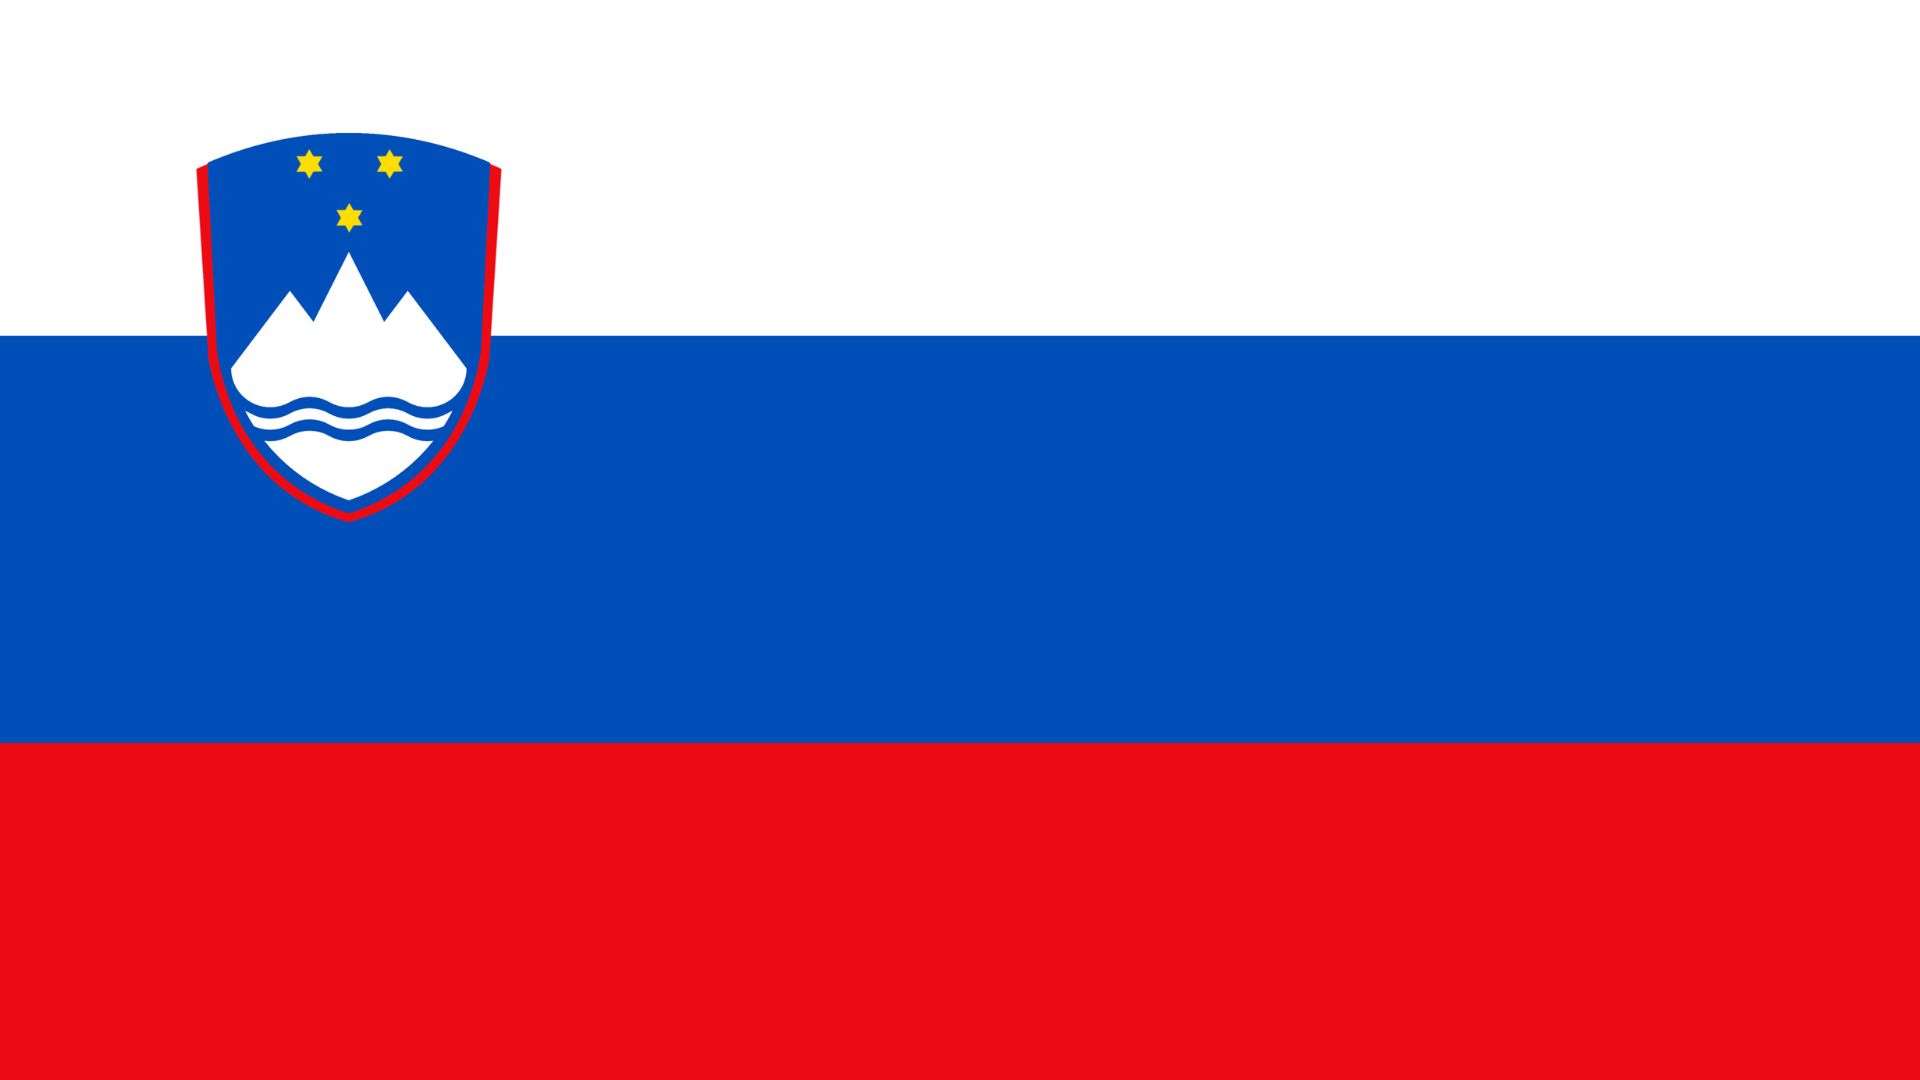 A bandeira  da Eslovénia possui três faixas horizontais iguais nas cores: branco (topo), azul e vermelho, com o brasão de armas esloveno localizado na parte superior do retângulo entre as faixas branca e azul.